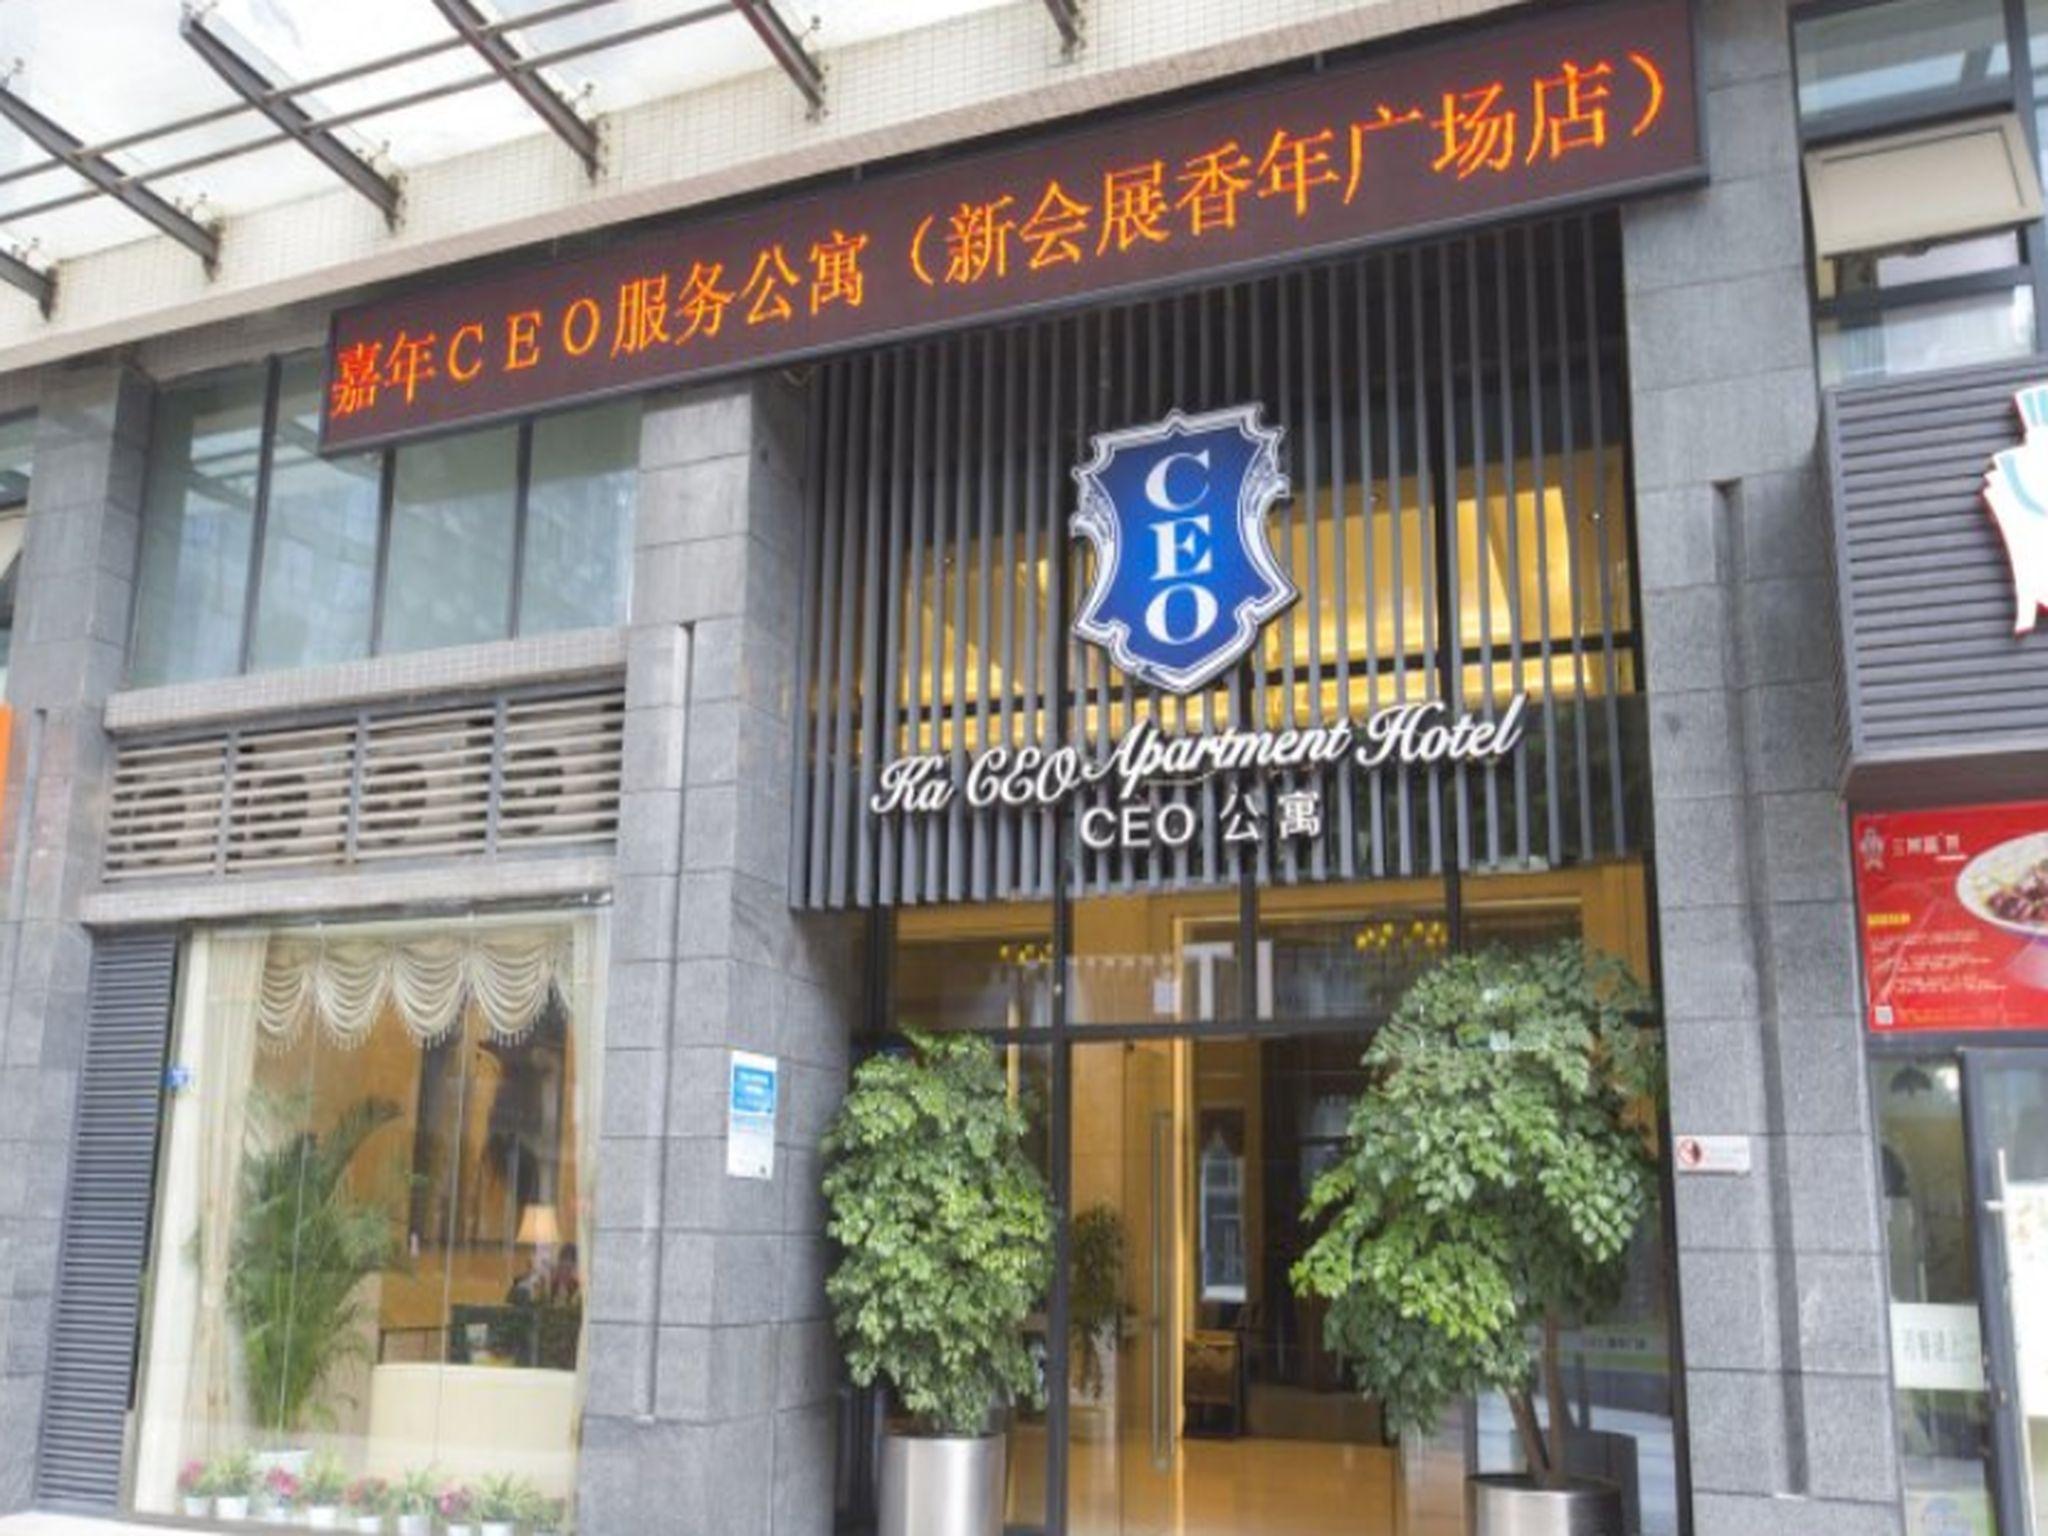 Chengdu Jianian Ceo Apartment